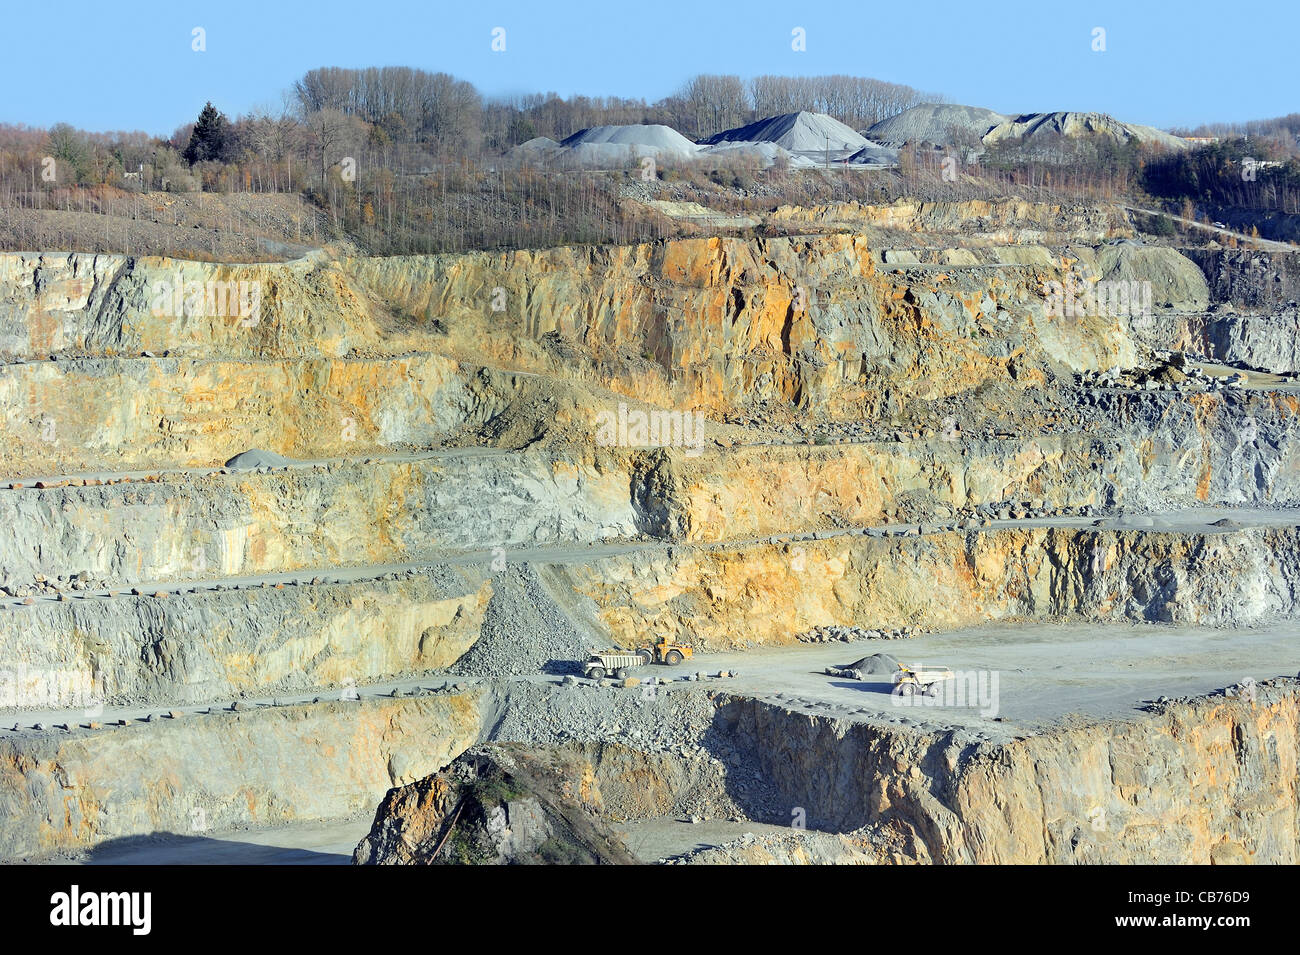 LKW bei der Arbeit in Porphyr-Steinbruch, Tagebau-mine für die Produktion von Schotter für den Straßenbau zu Lessen / Lessines, Belgien Stockfoto